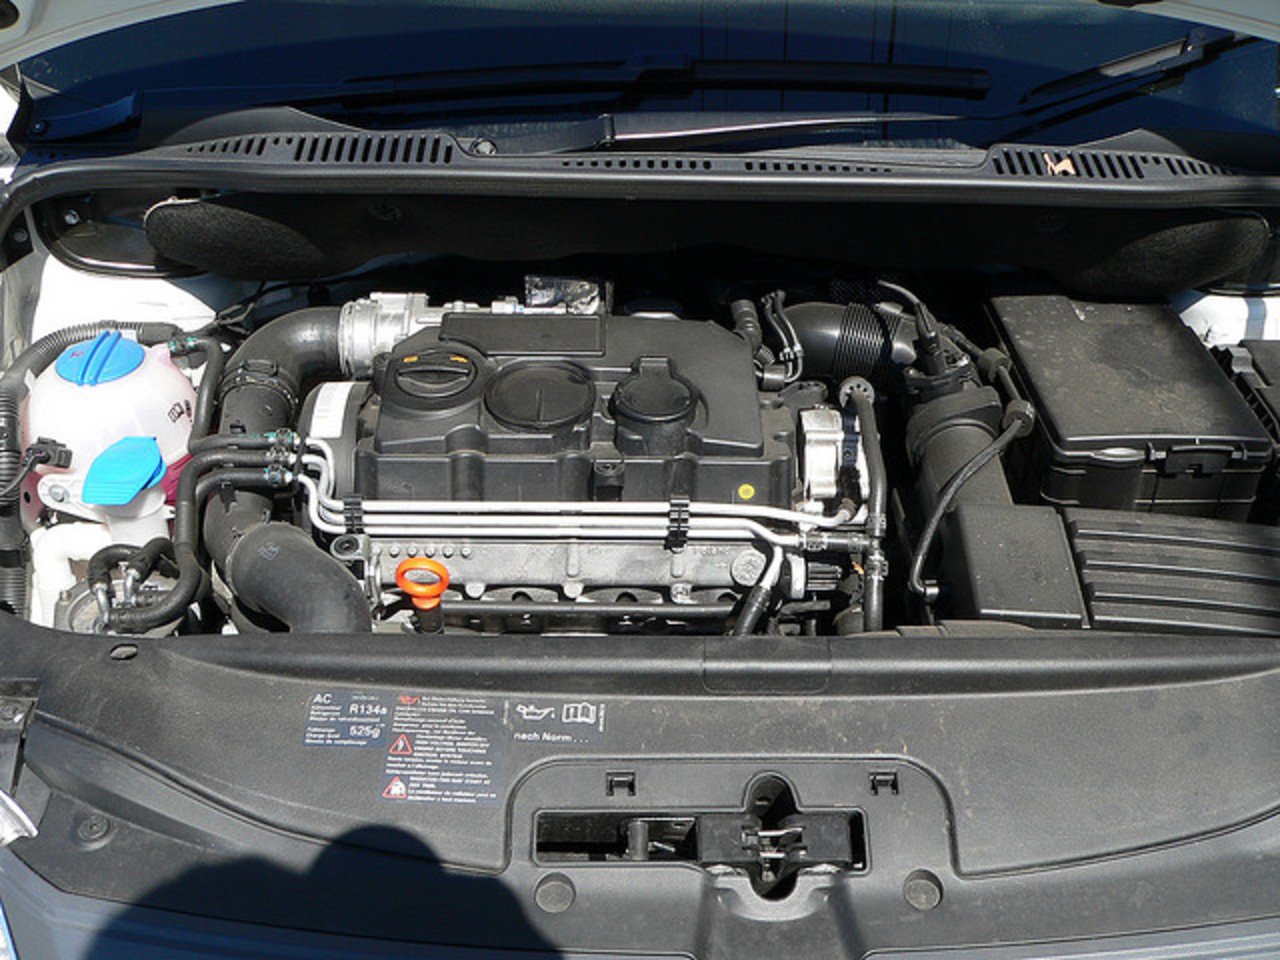 VW Caddy TDI Engine Bay | Flickr - Photo Sharing!